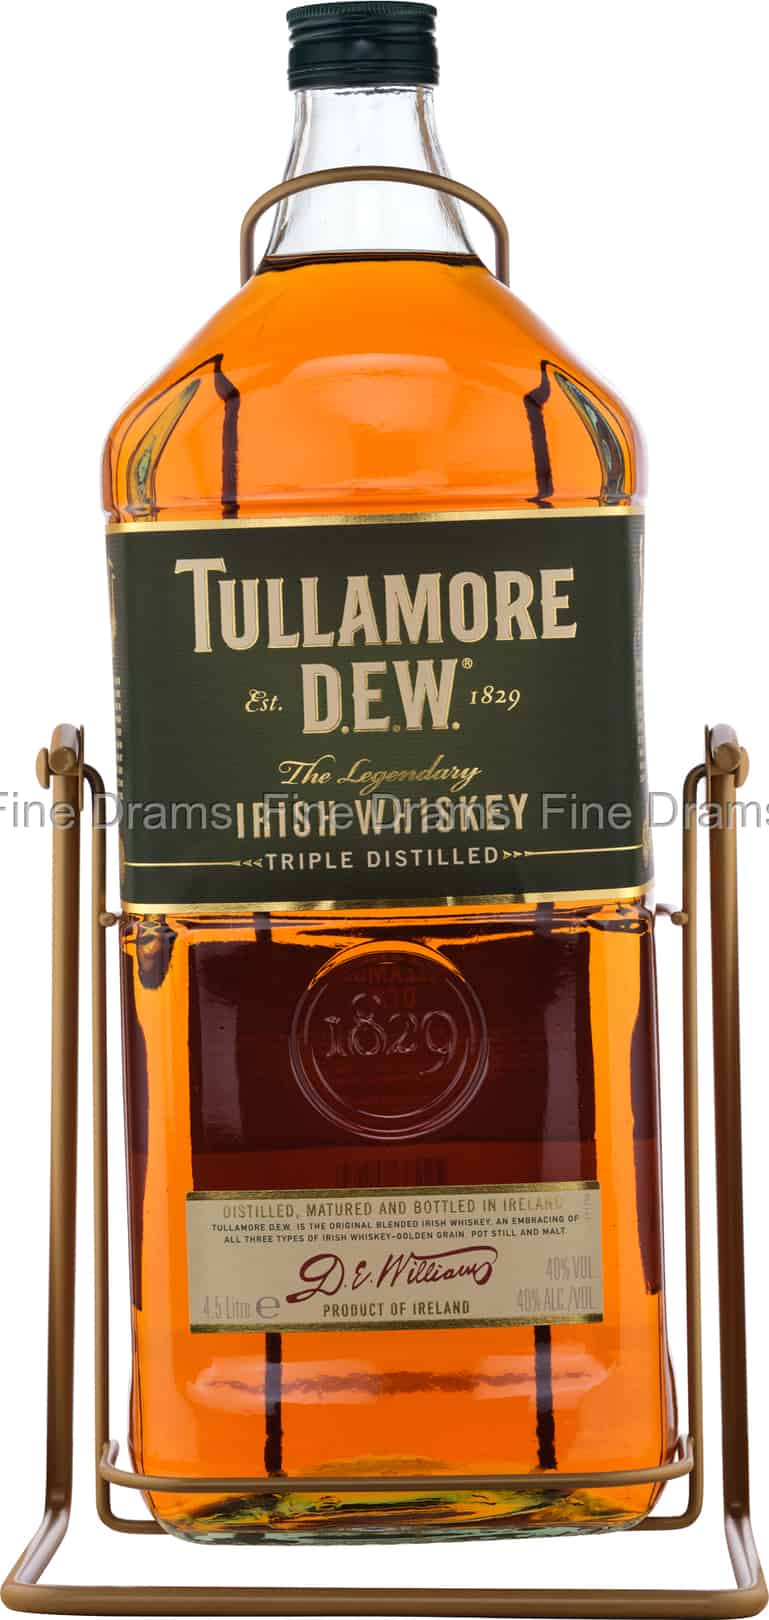 Tullamore D.E.W. Whiskey (4.5 Liter)